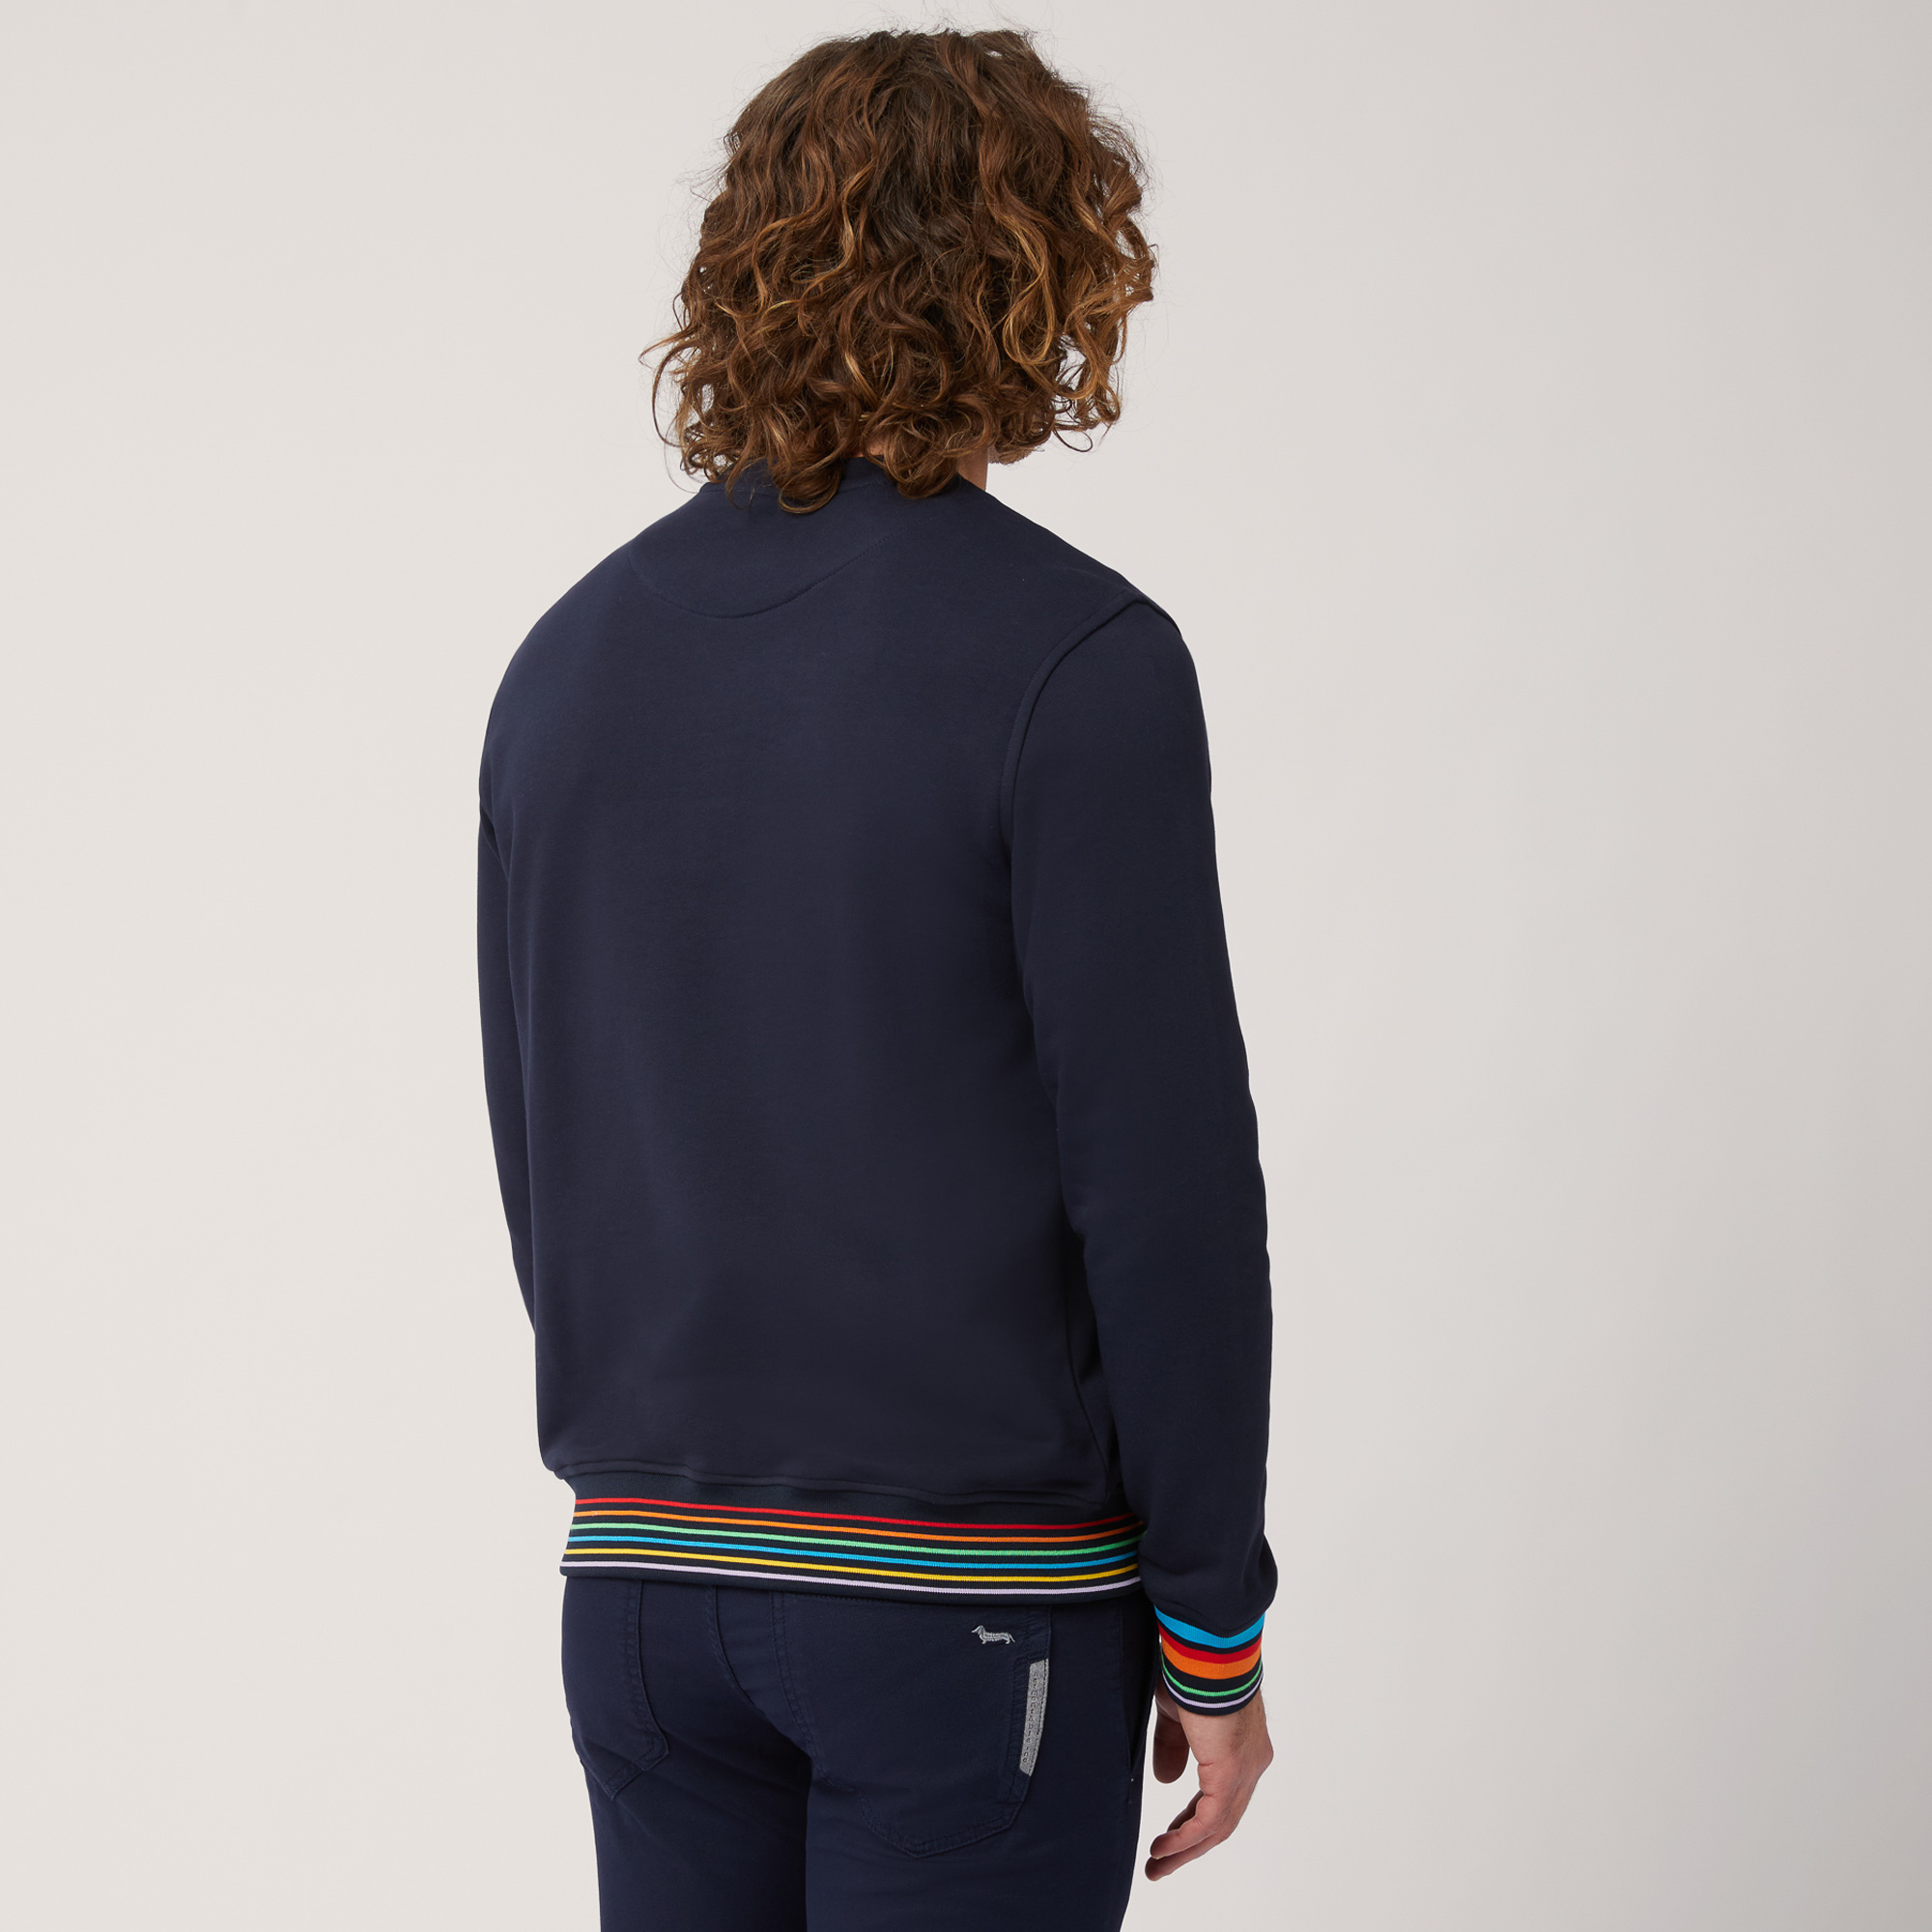 Pullover mit Rundhalsausschnitt aus Baumwolle mit gestreiften Details, Blau, large image number 1